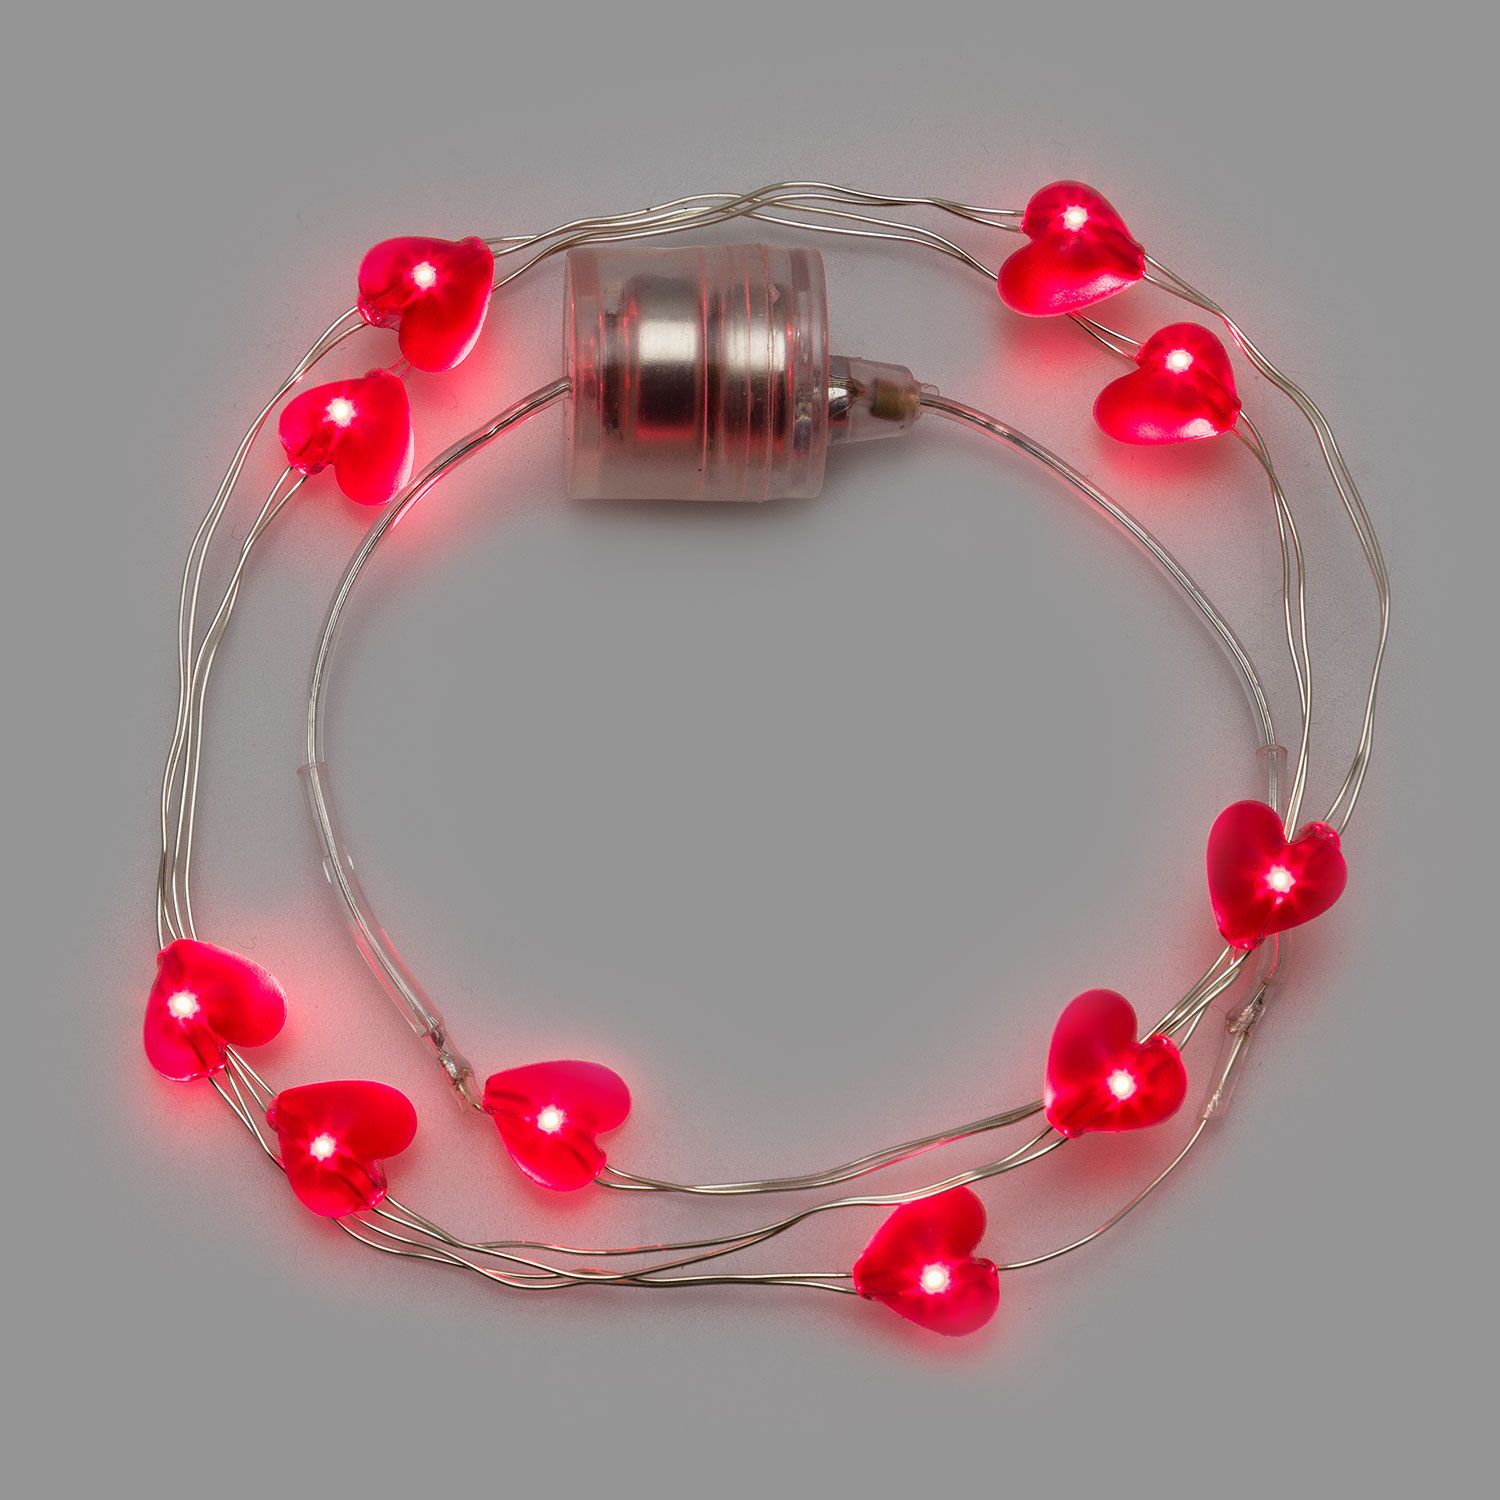 Halslichterkette Brilly mit roten LED-Herzen